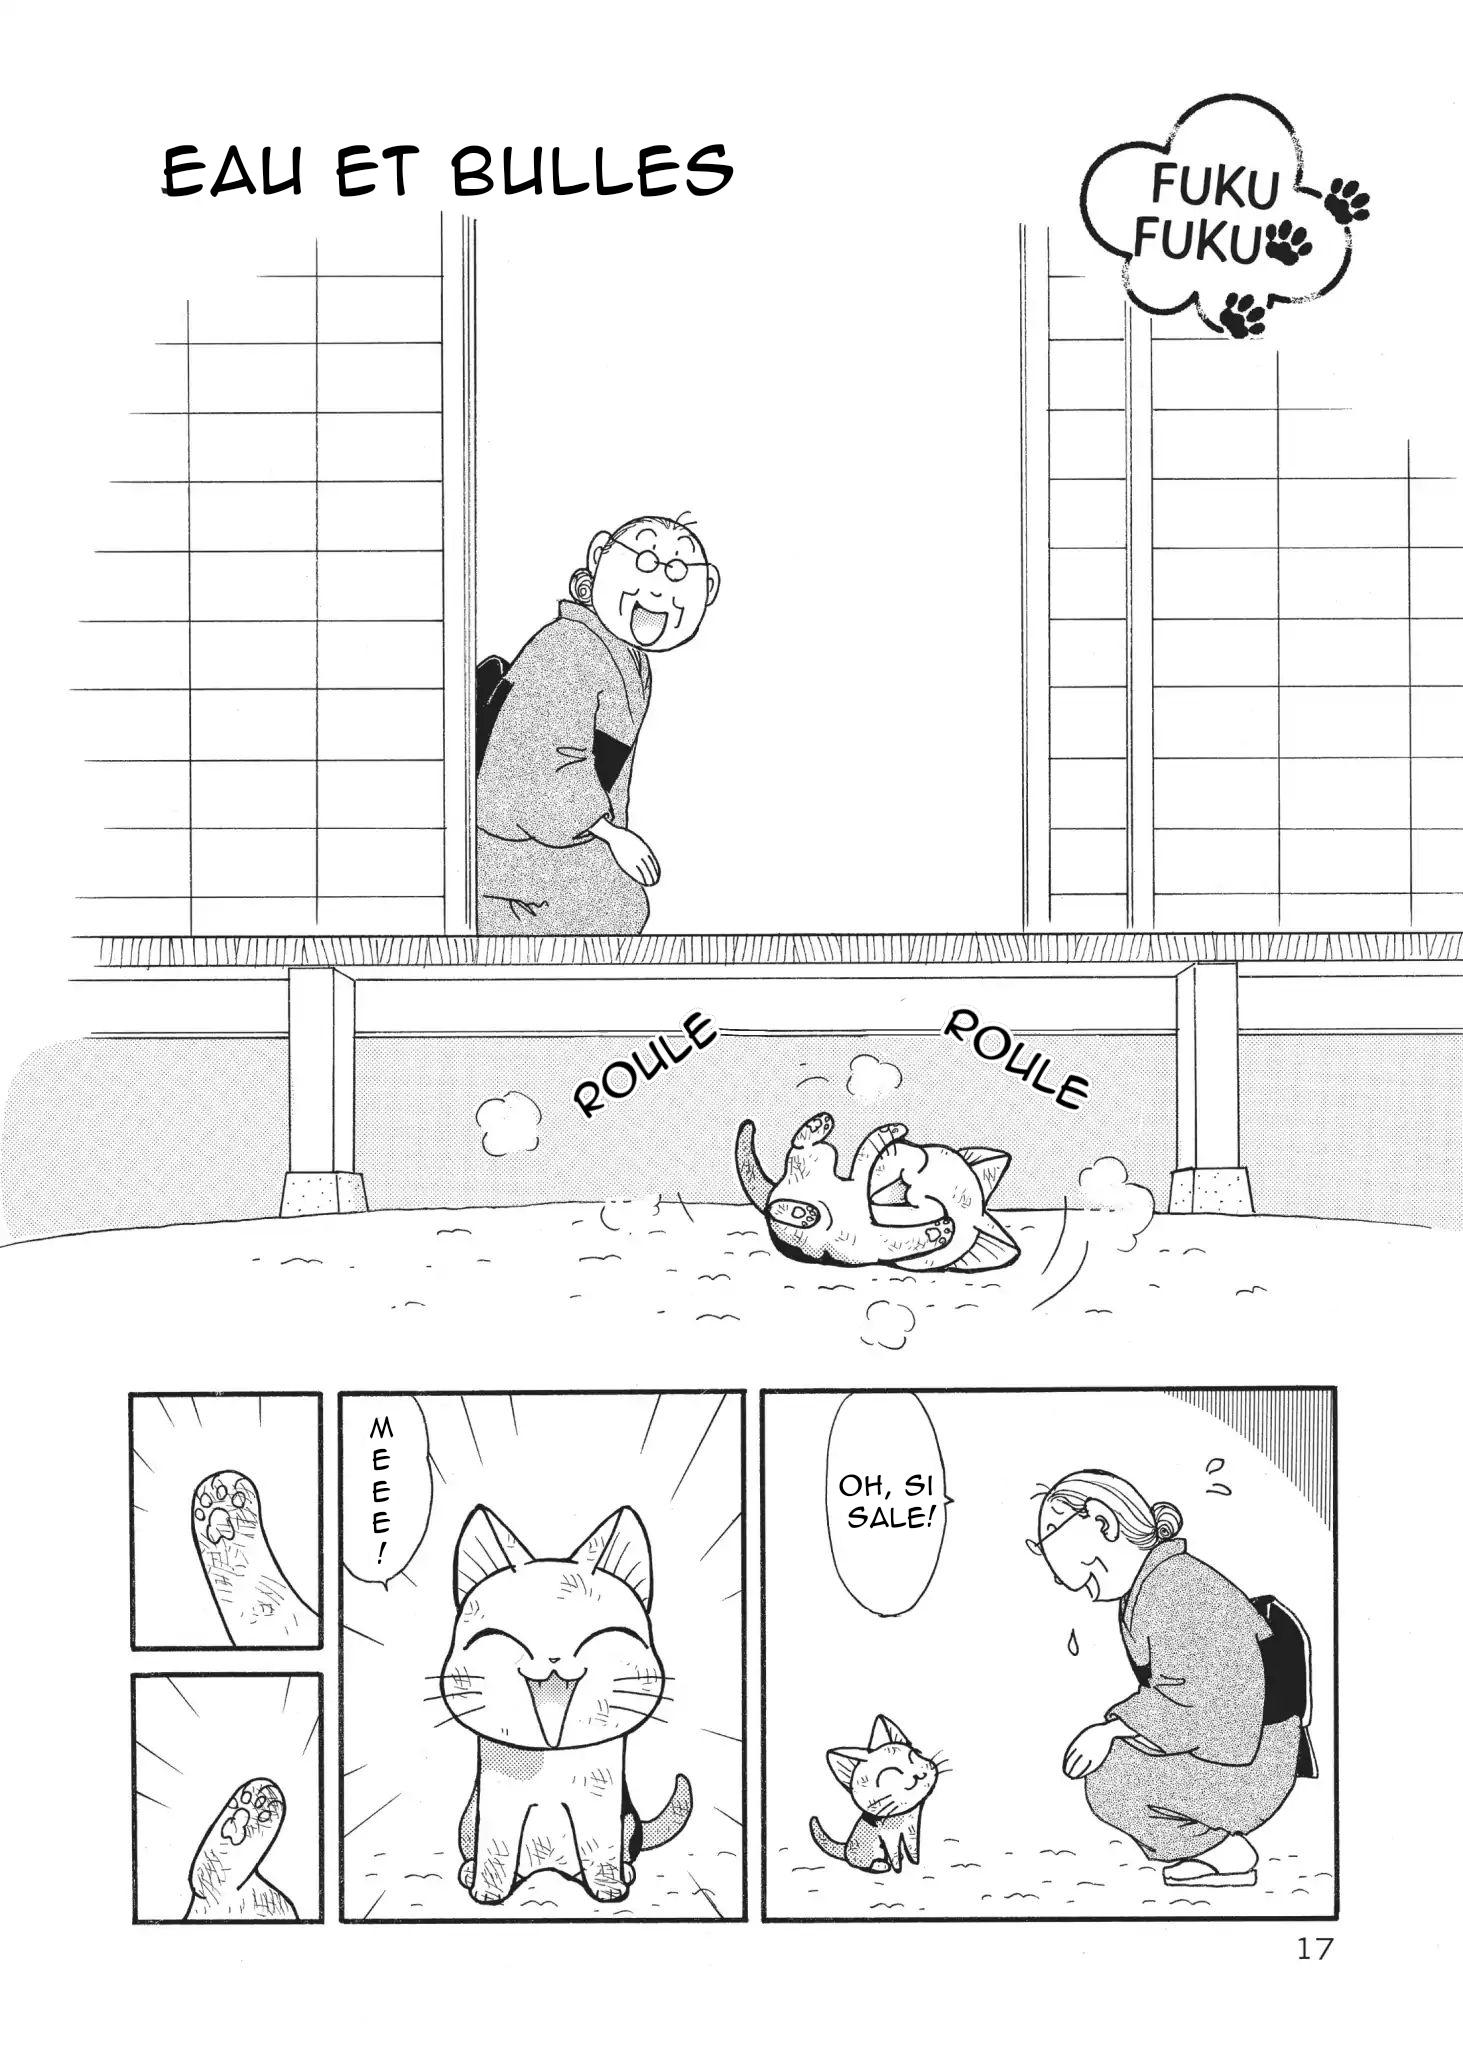 FukuFuku: Kitten Tales: Chapter 3 - Page 1